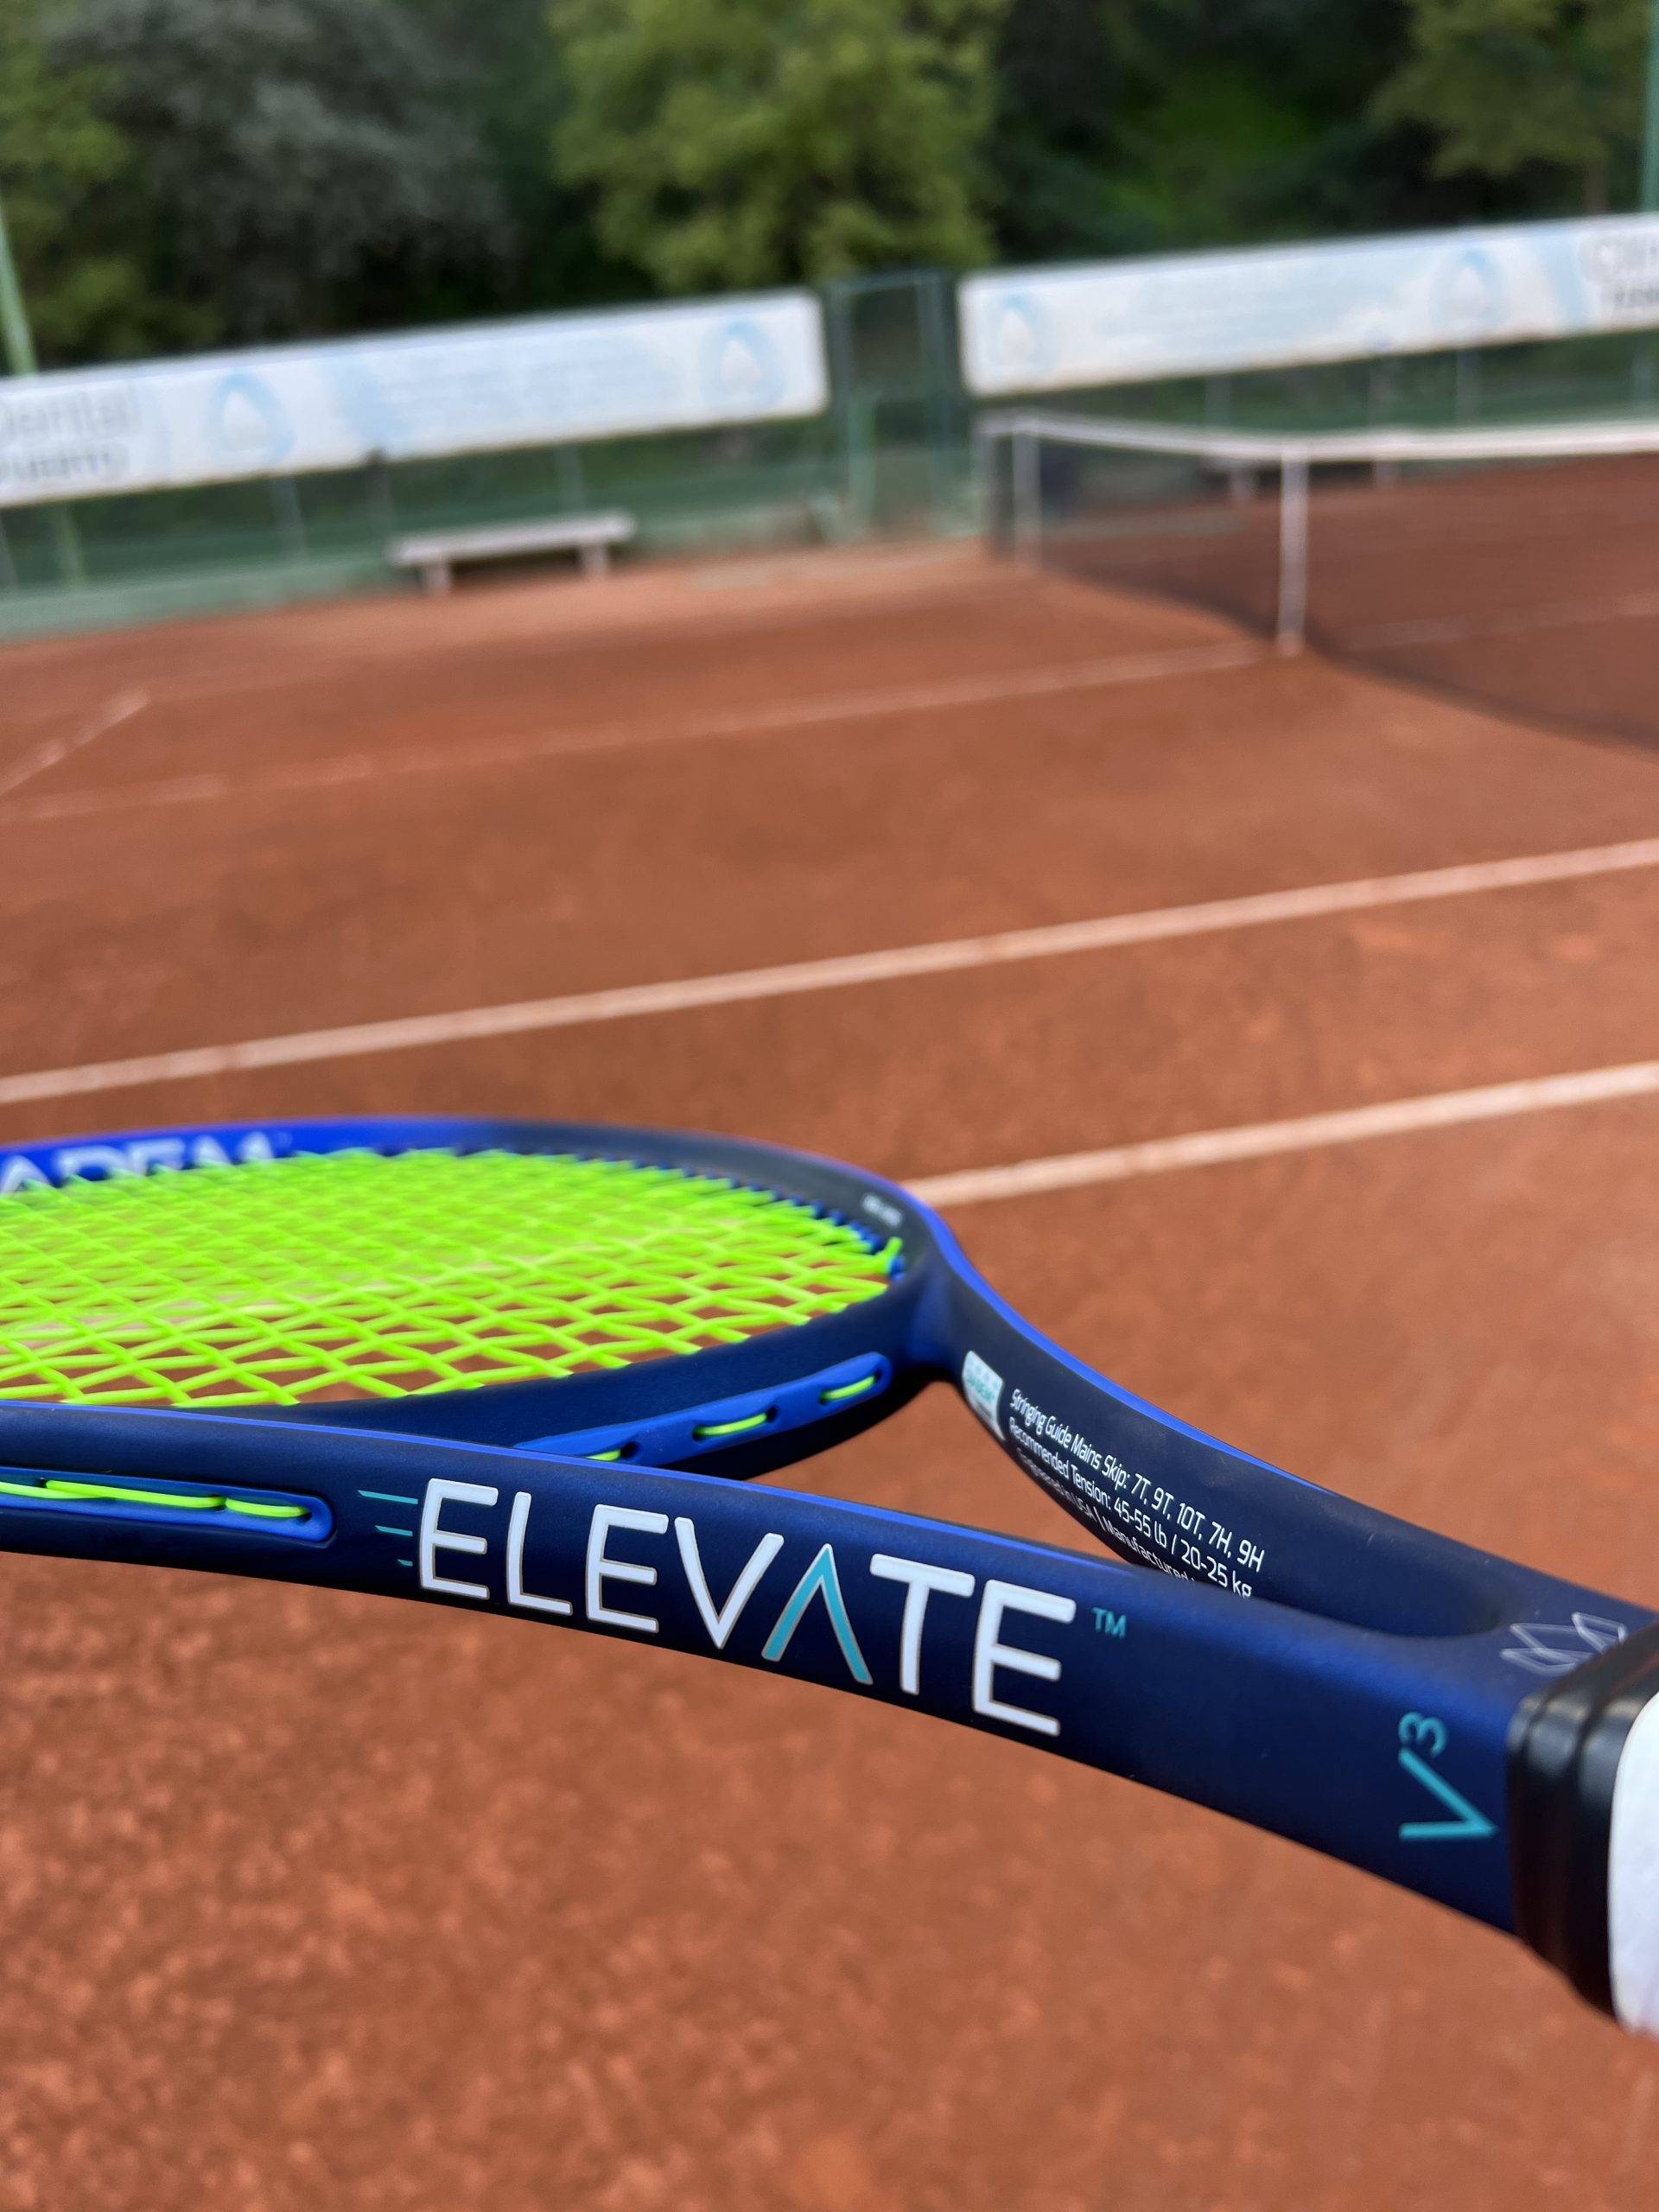 Diadem Elevate V3 Review - Tennisnerd.net